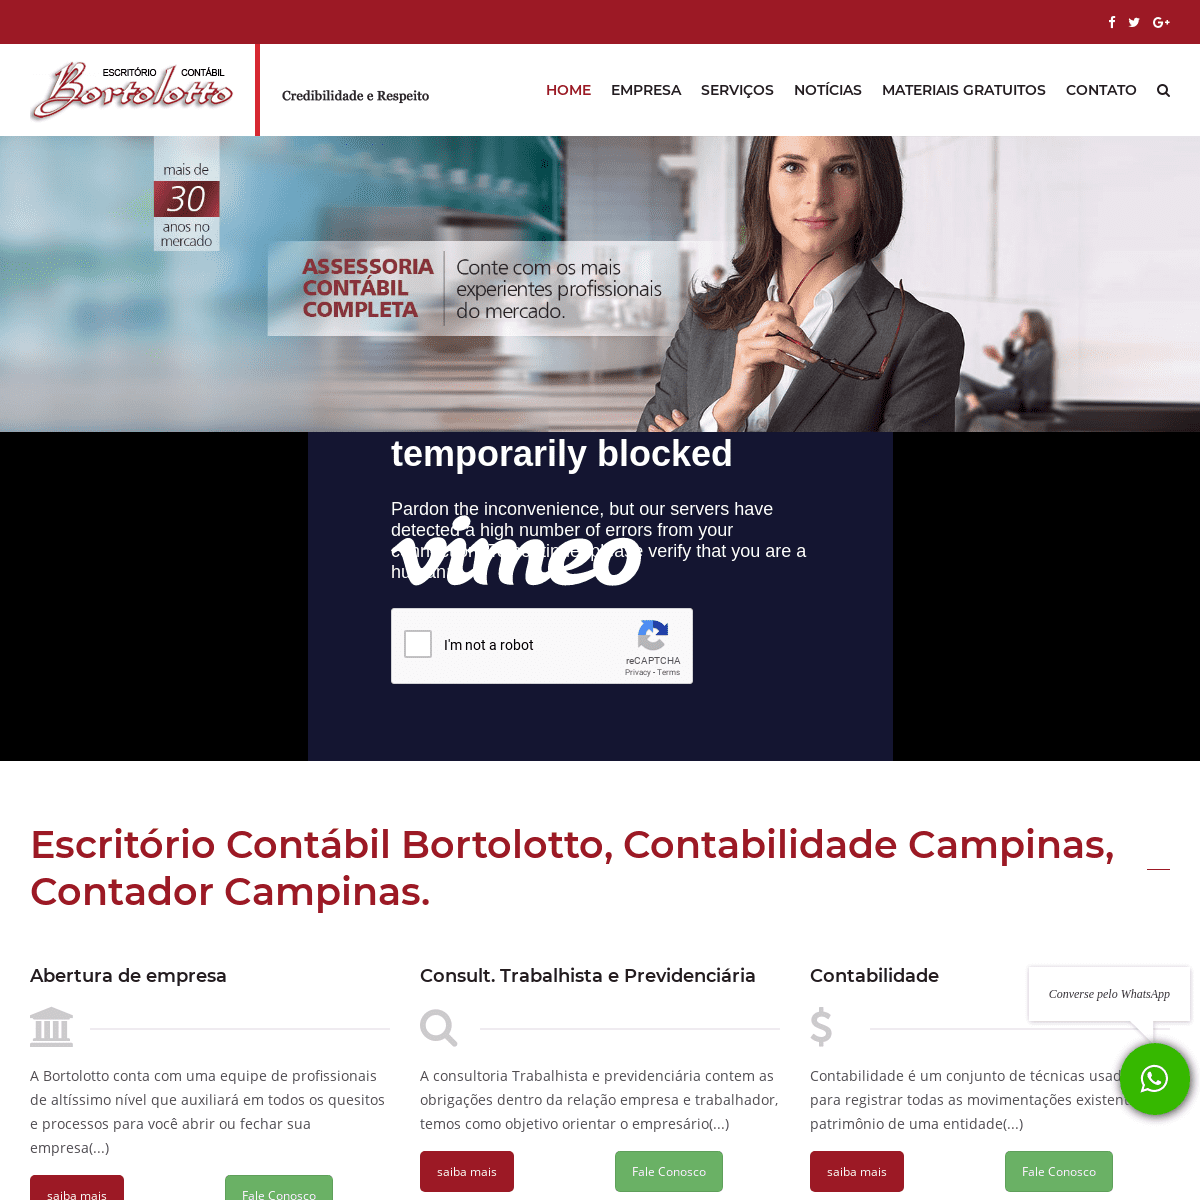 A complete backup of bortolottocontabilidade.com.br